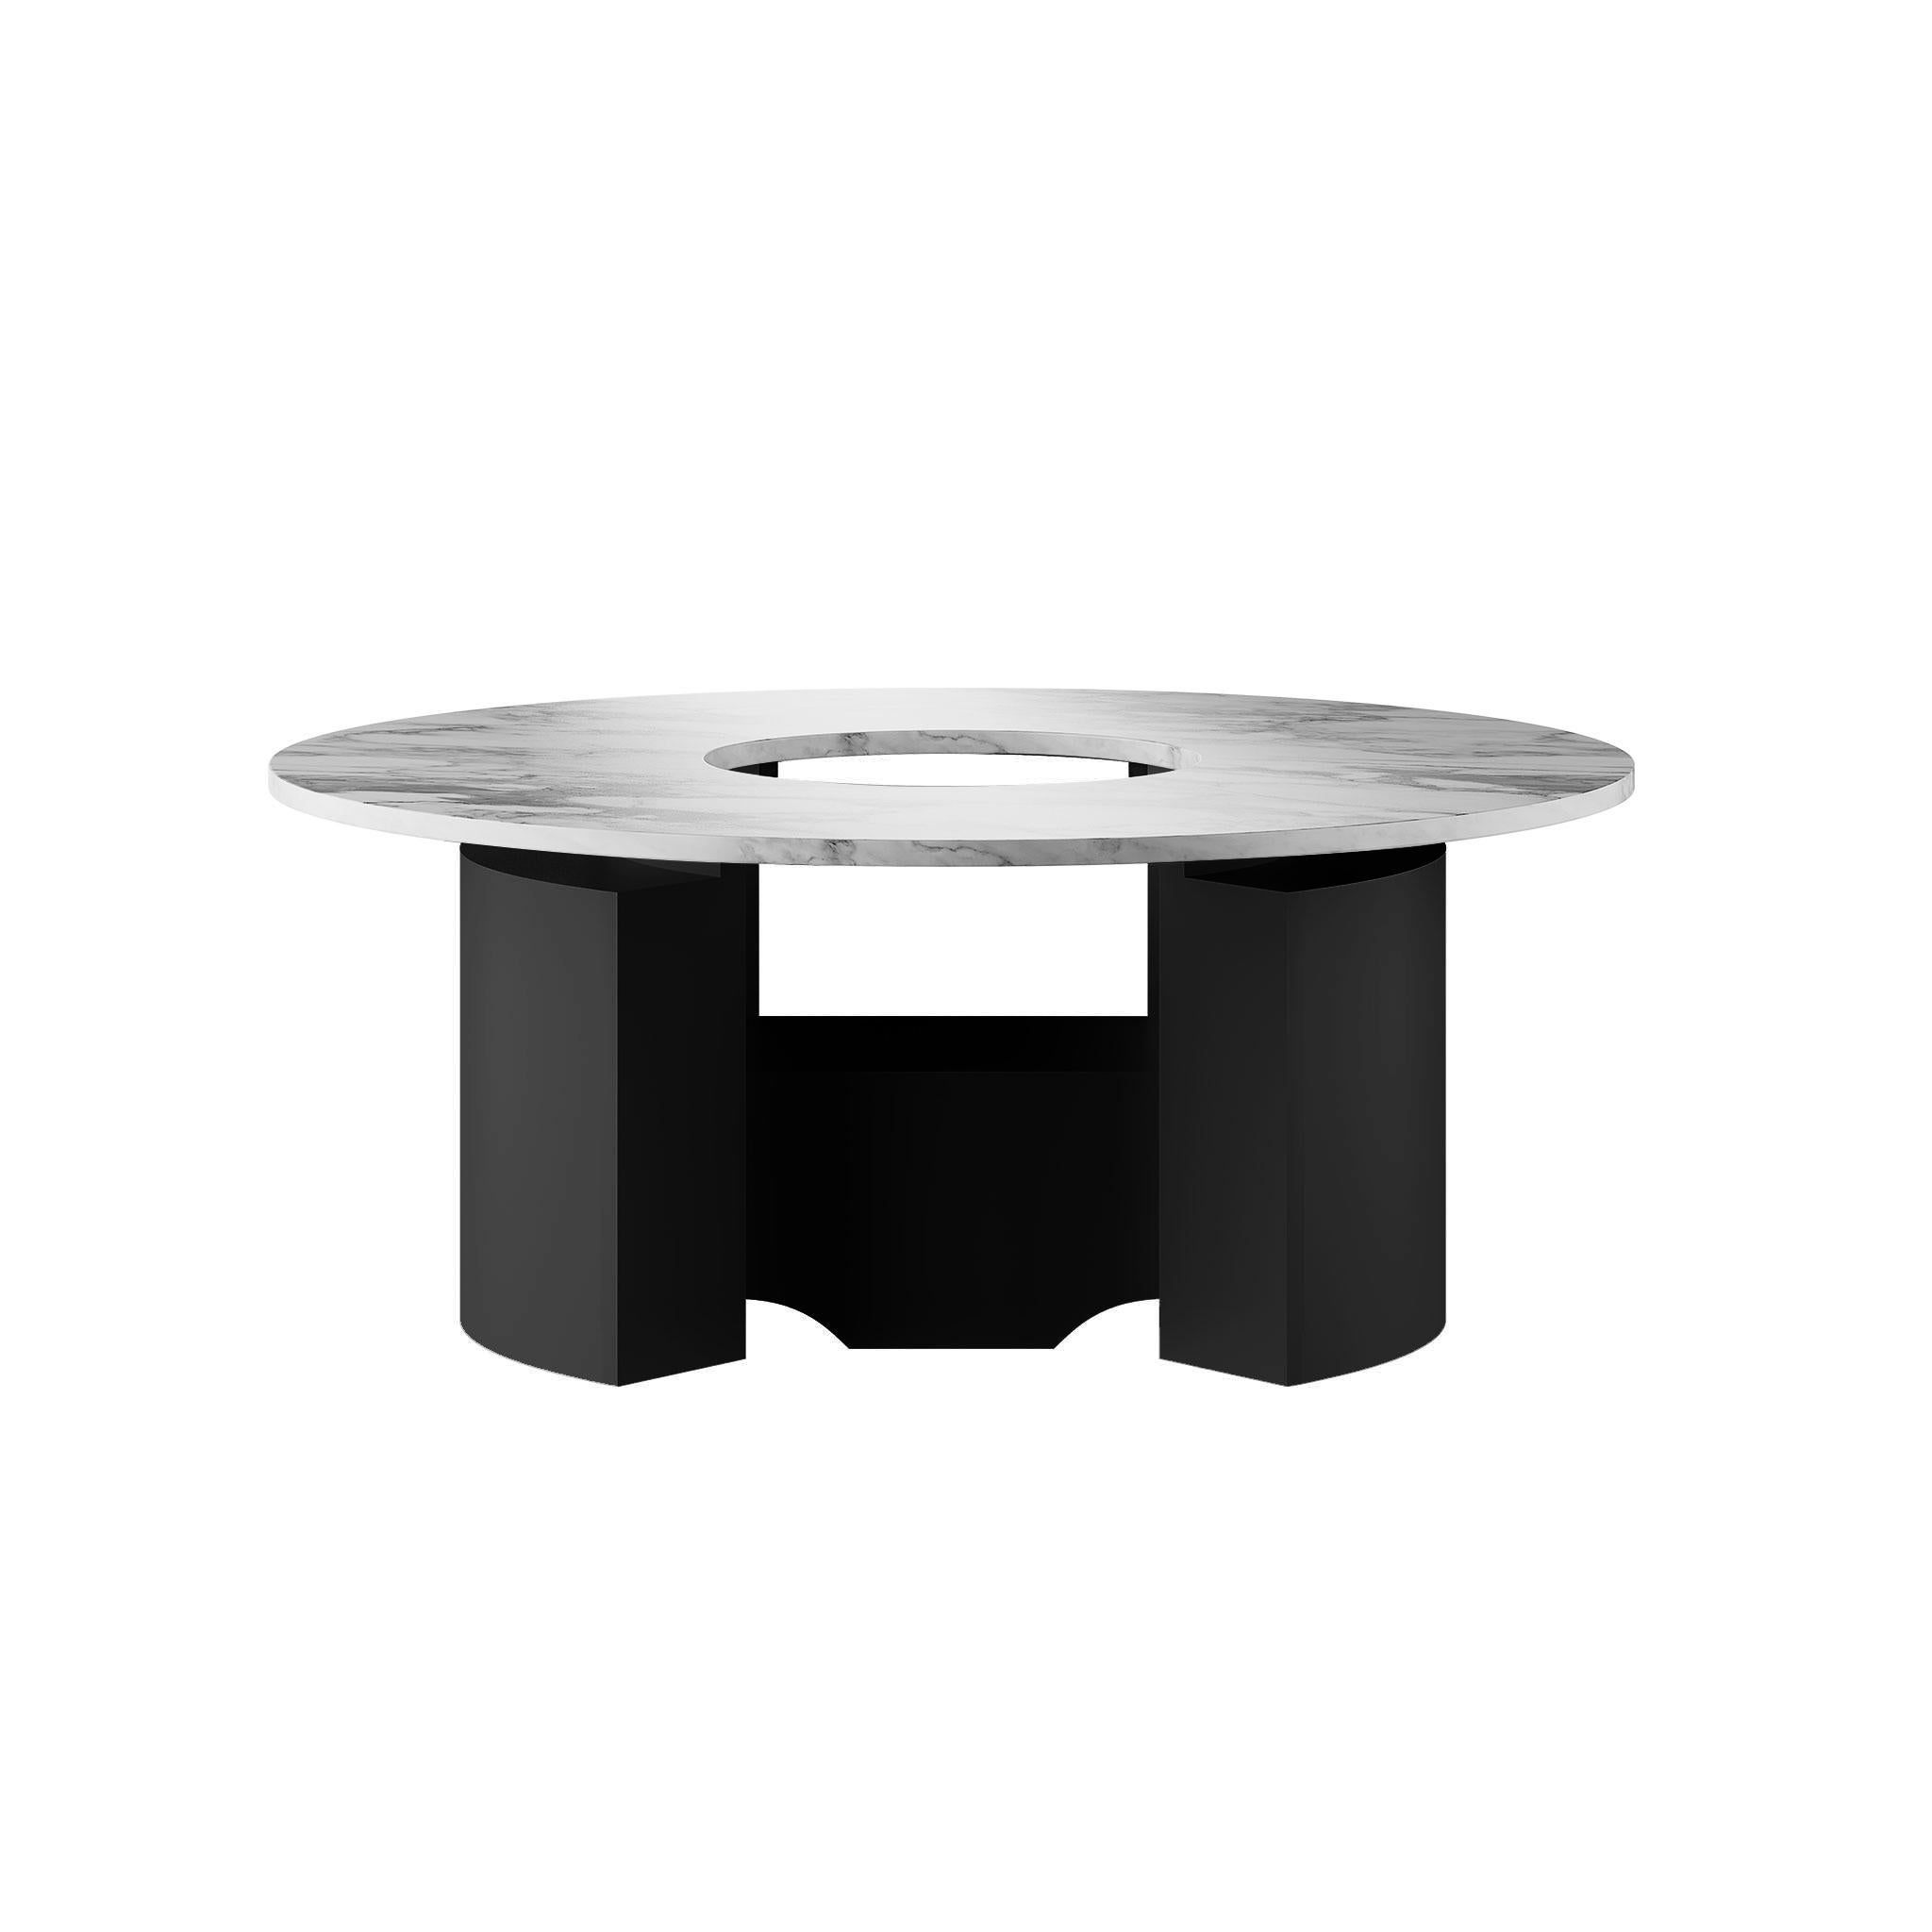 Entdecken Sie den Inbegriff zeitgenössischer Eleganz mit unserem Contemporary Center Table aus luxuriösem weißem Calacatta-Marmor und schwarzem Lack
Dieser sorgfältig gefertigte Mitteltisch, der Raffinesse ausstrahlt, verbindet nahtlos modernes